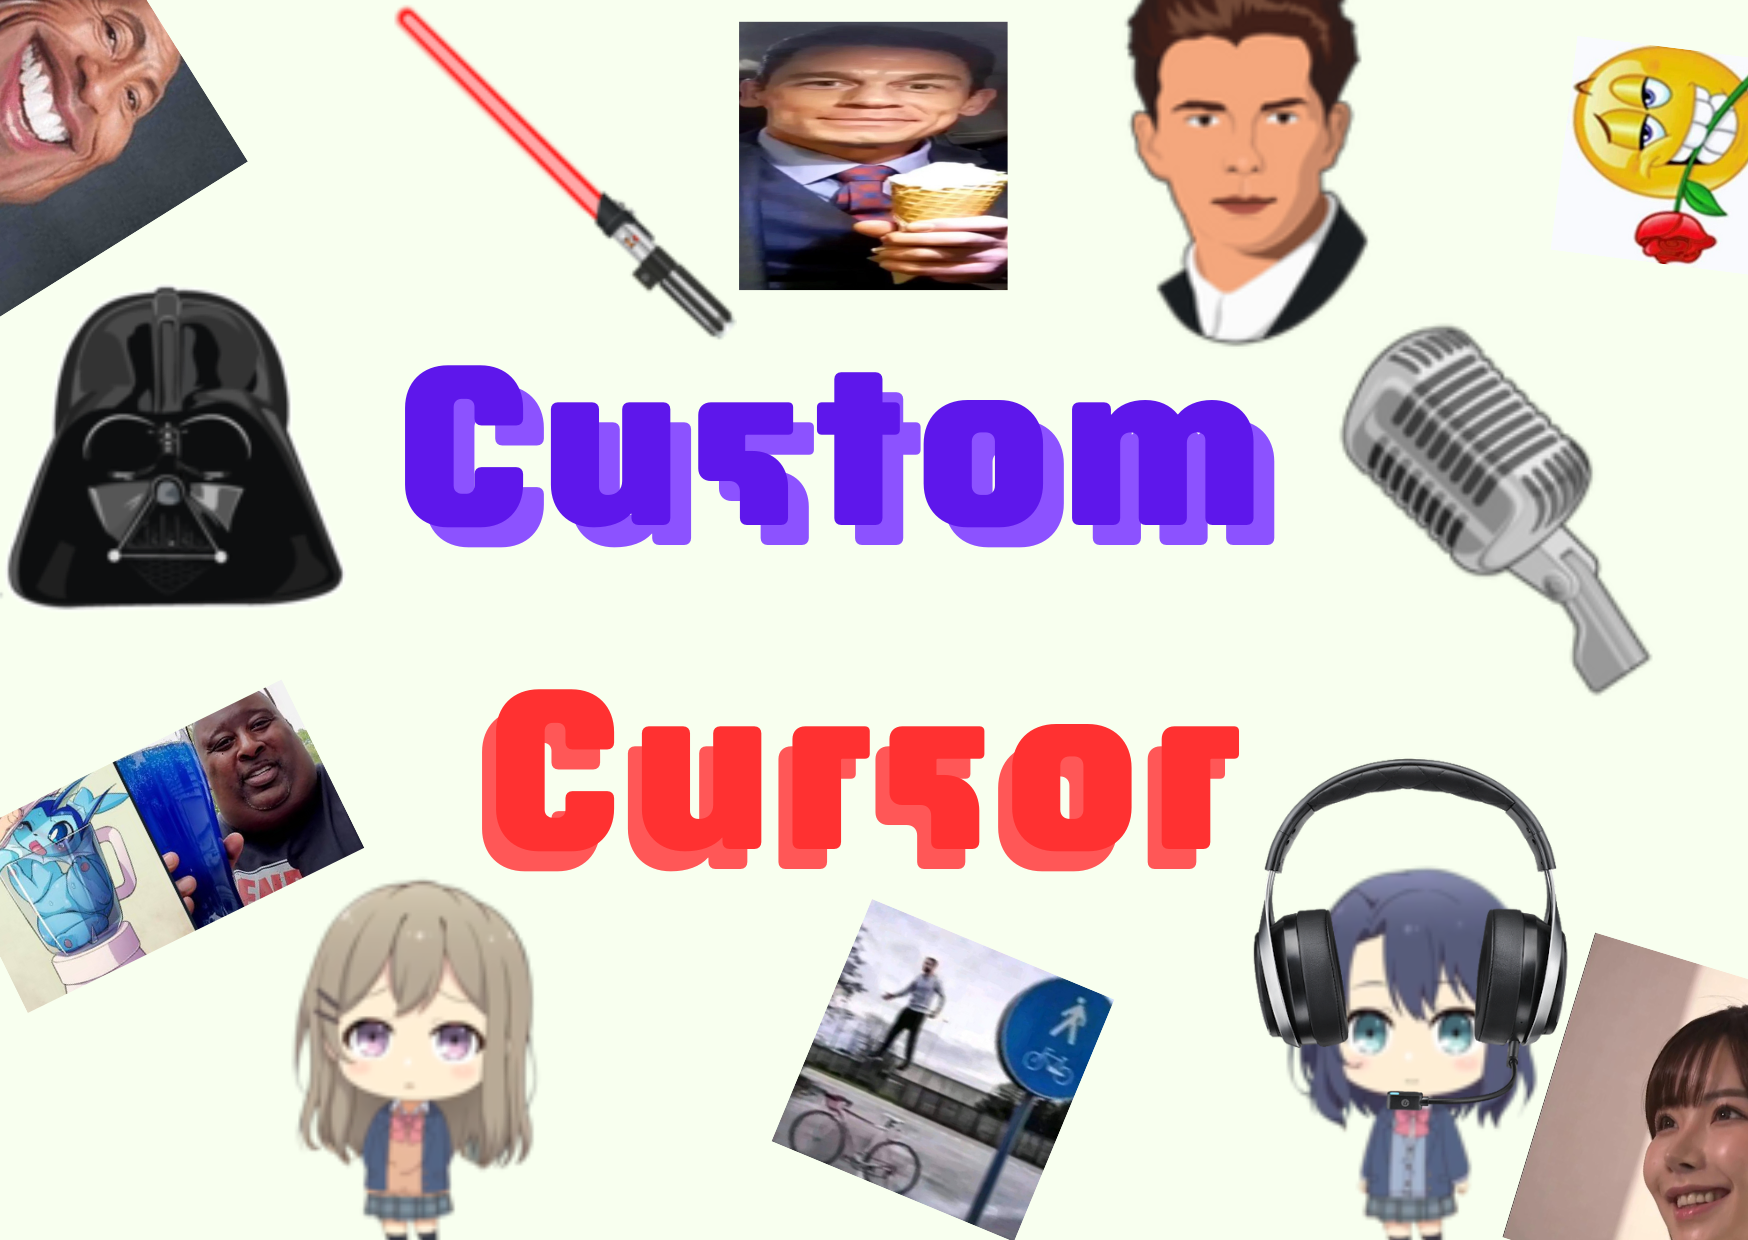 Rickrolling Meme cursor – Custom Cursor